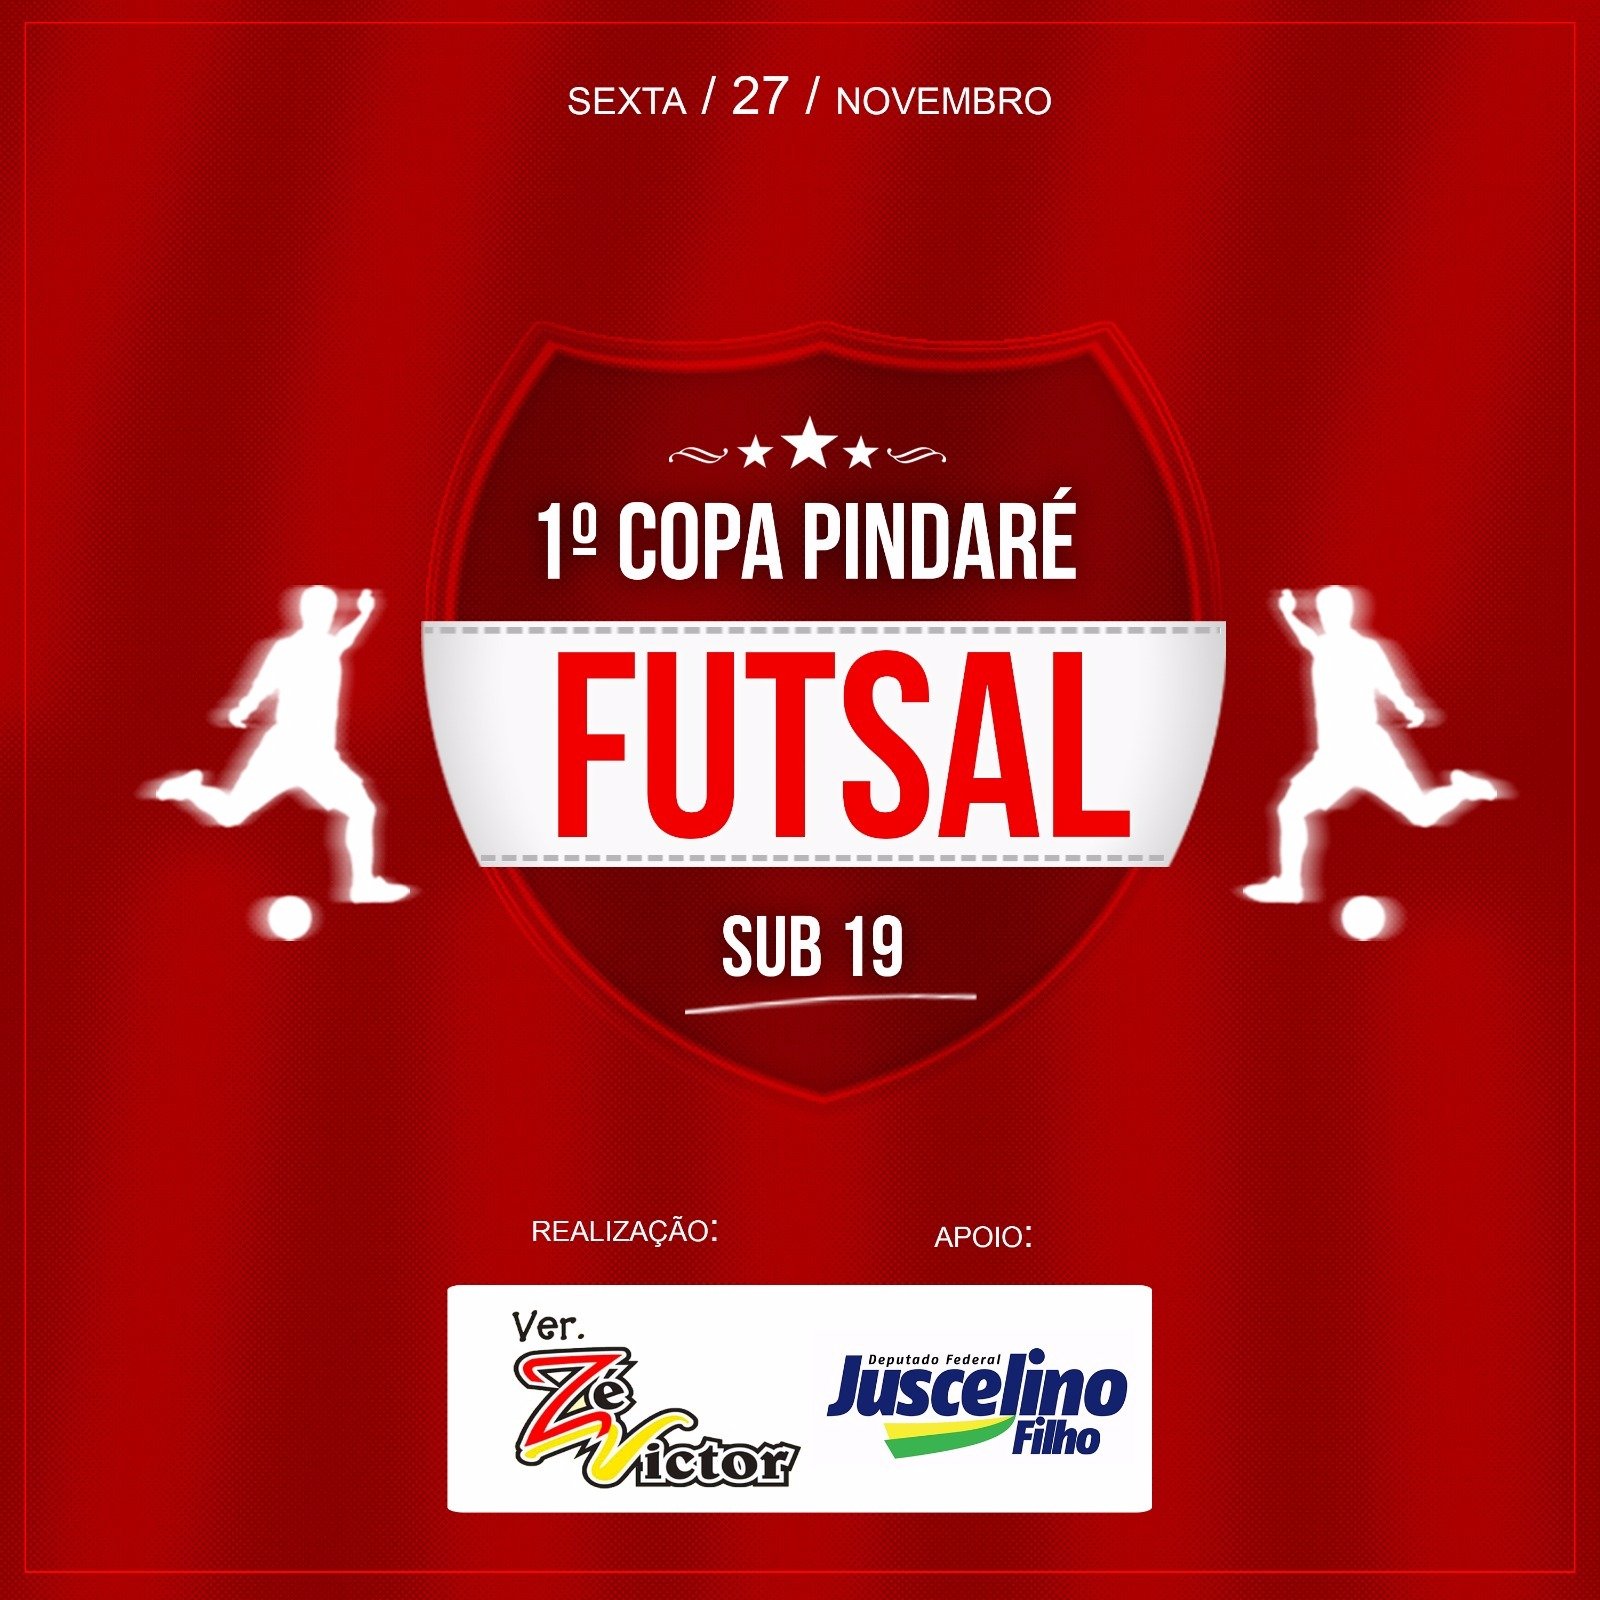 Vereador José Victor Cruz realiza a 1ª Copa Pindaré de Futsal sub 19